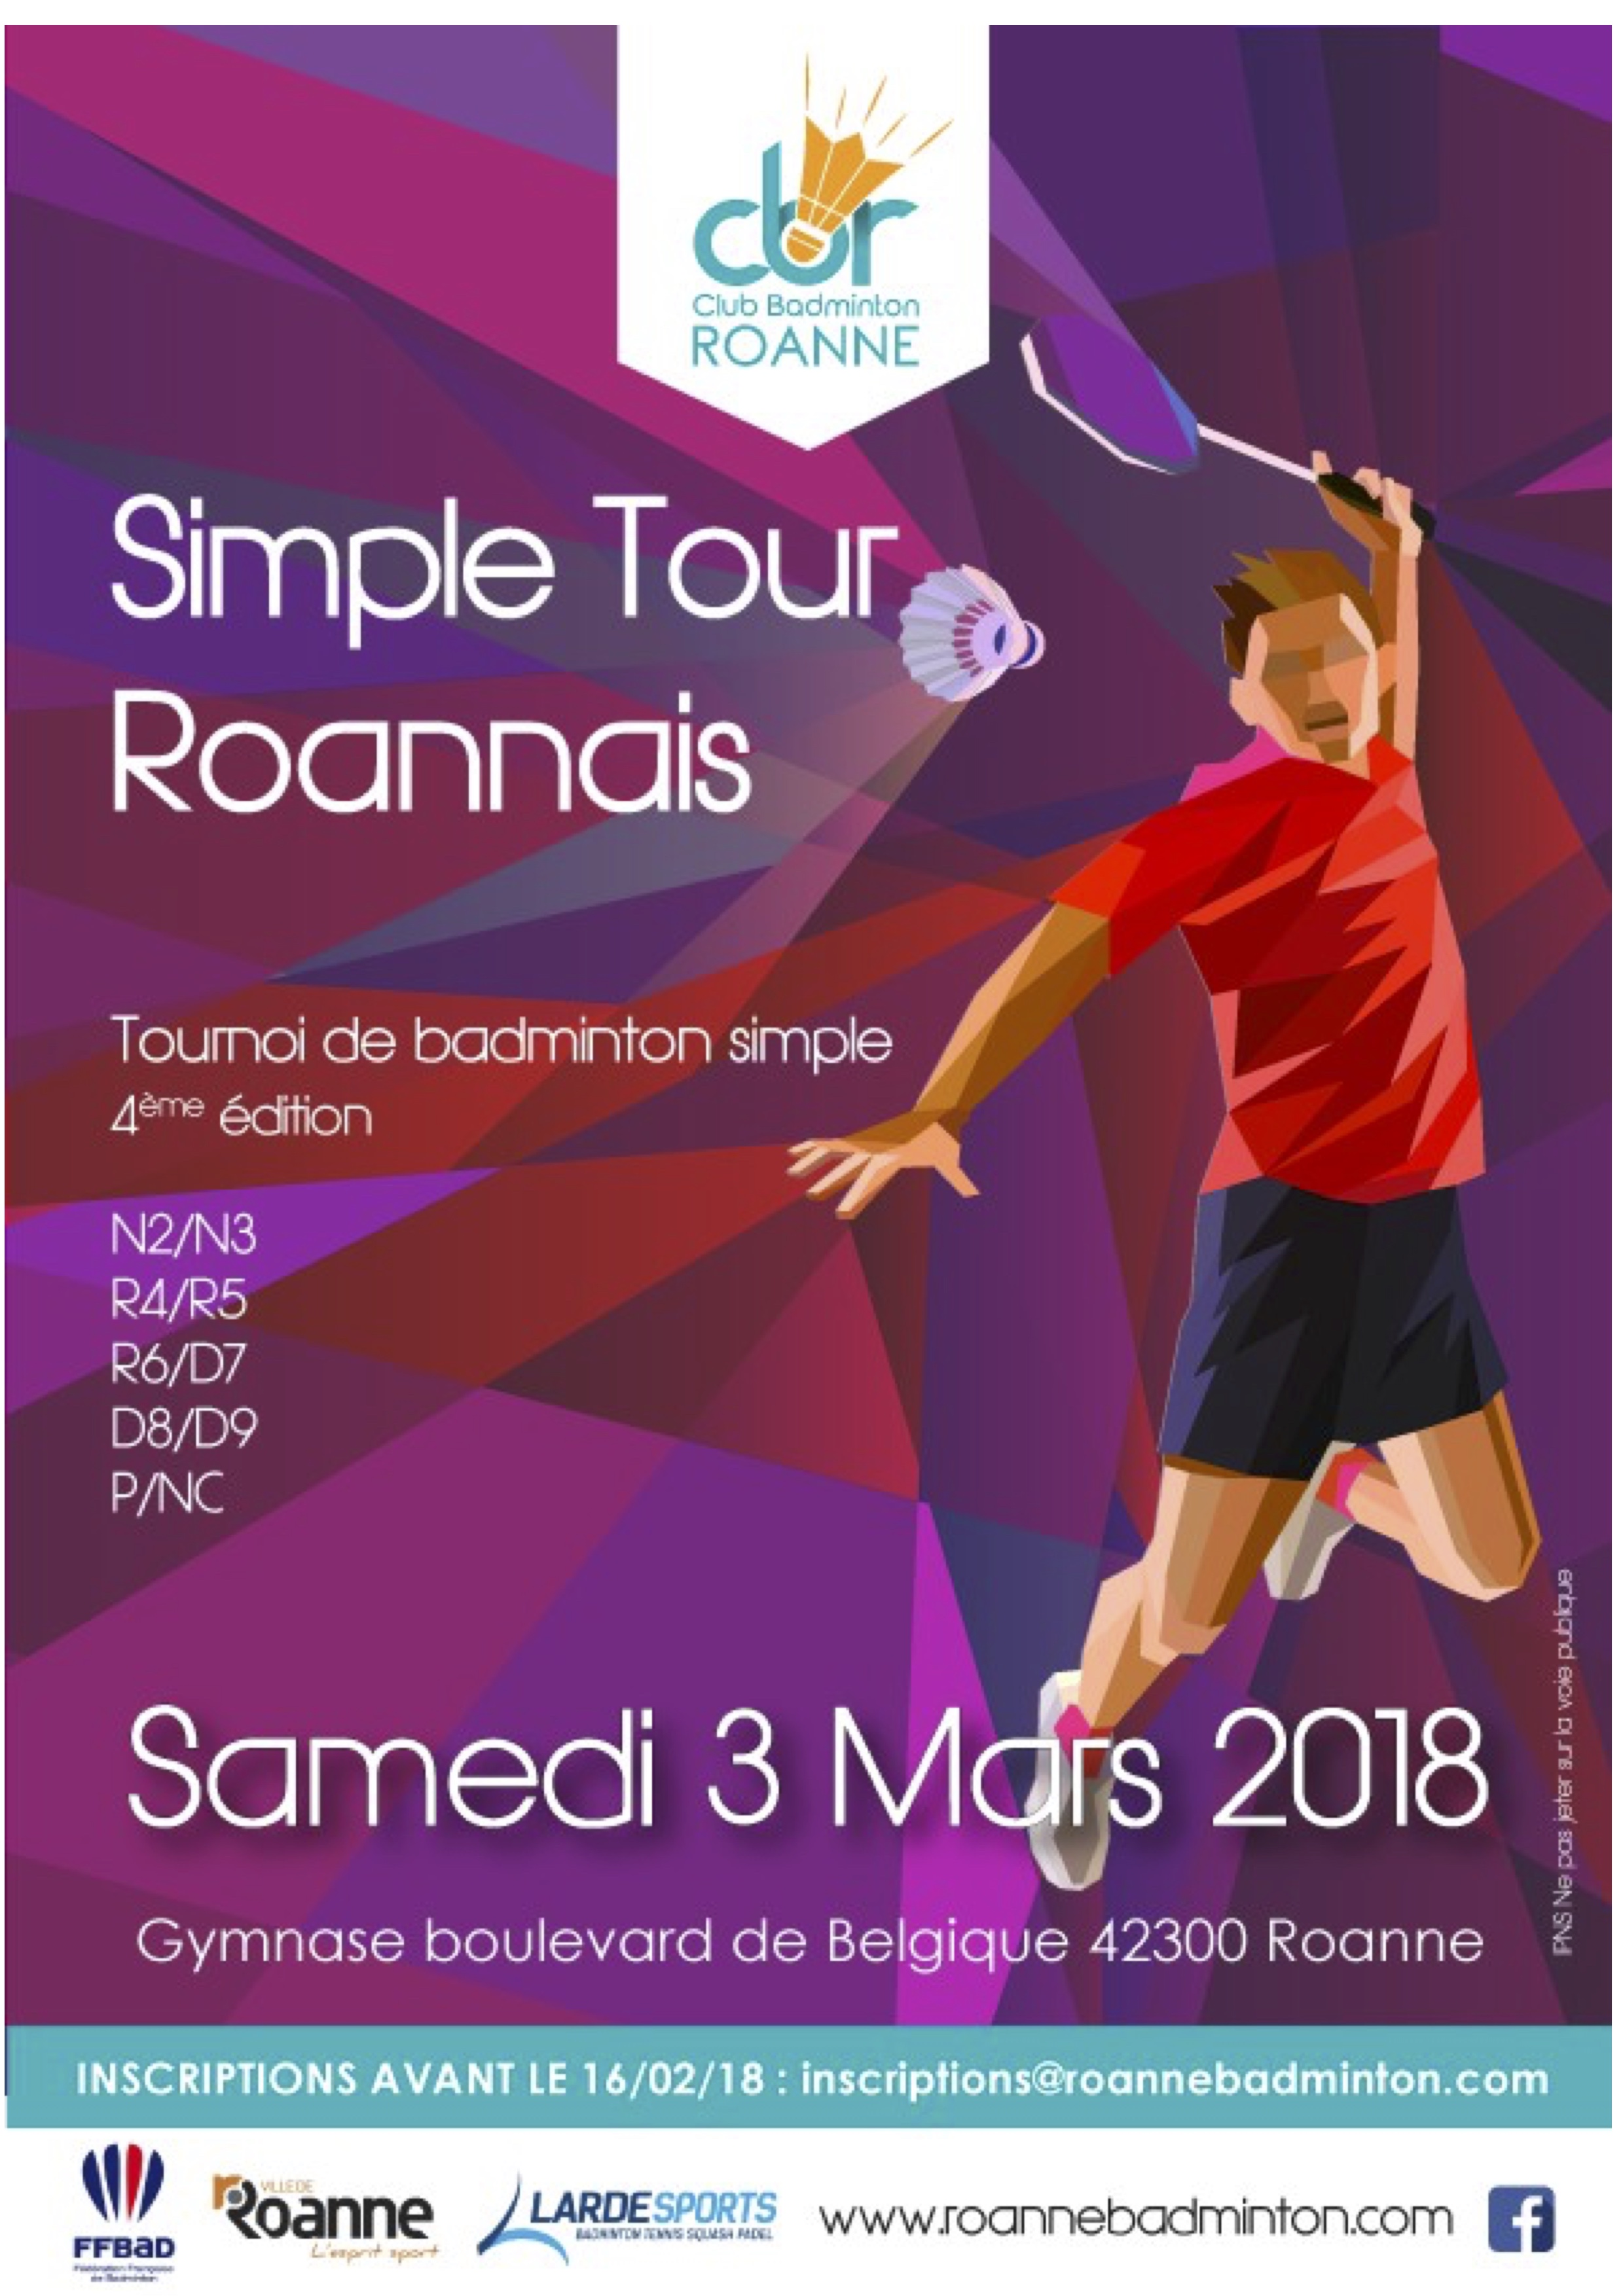 Simple Tour Roannais